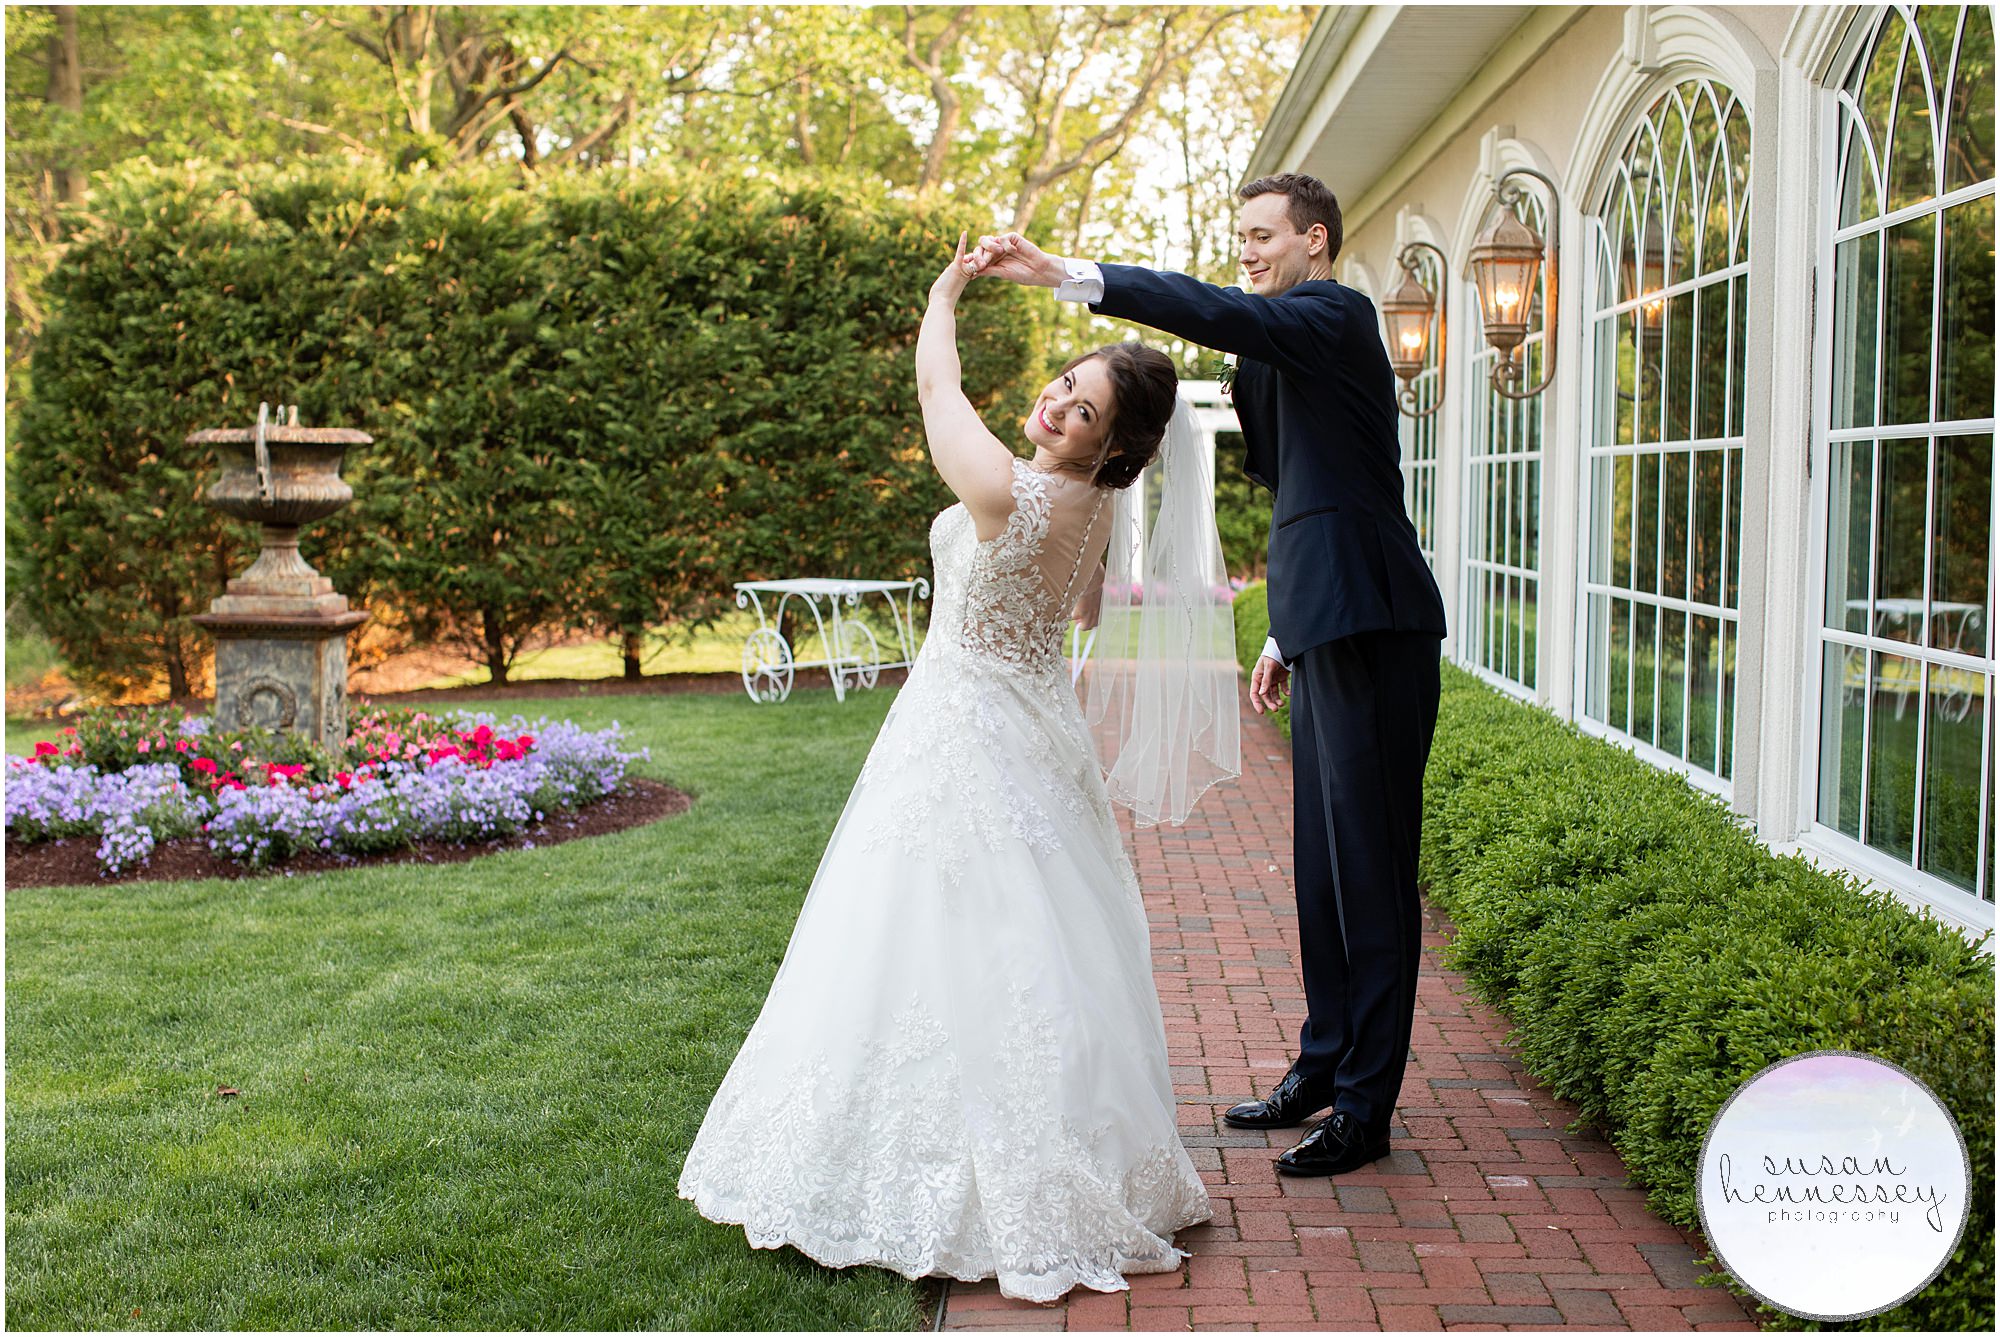 A groom twirls his bride on their wedding day.